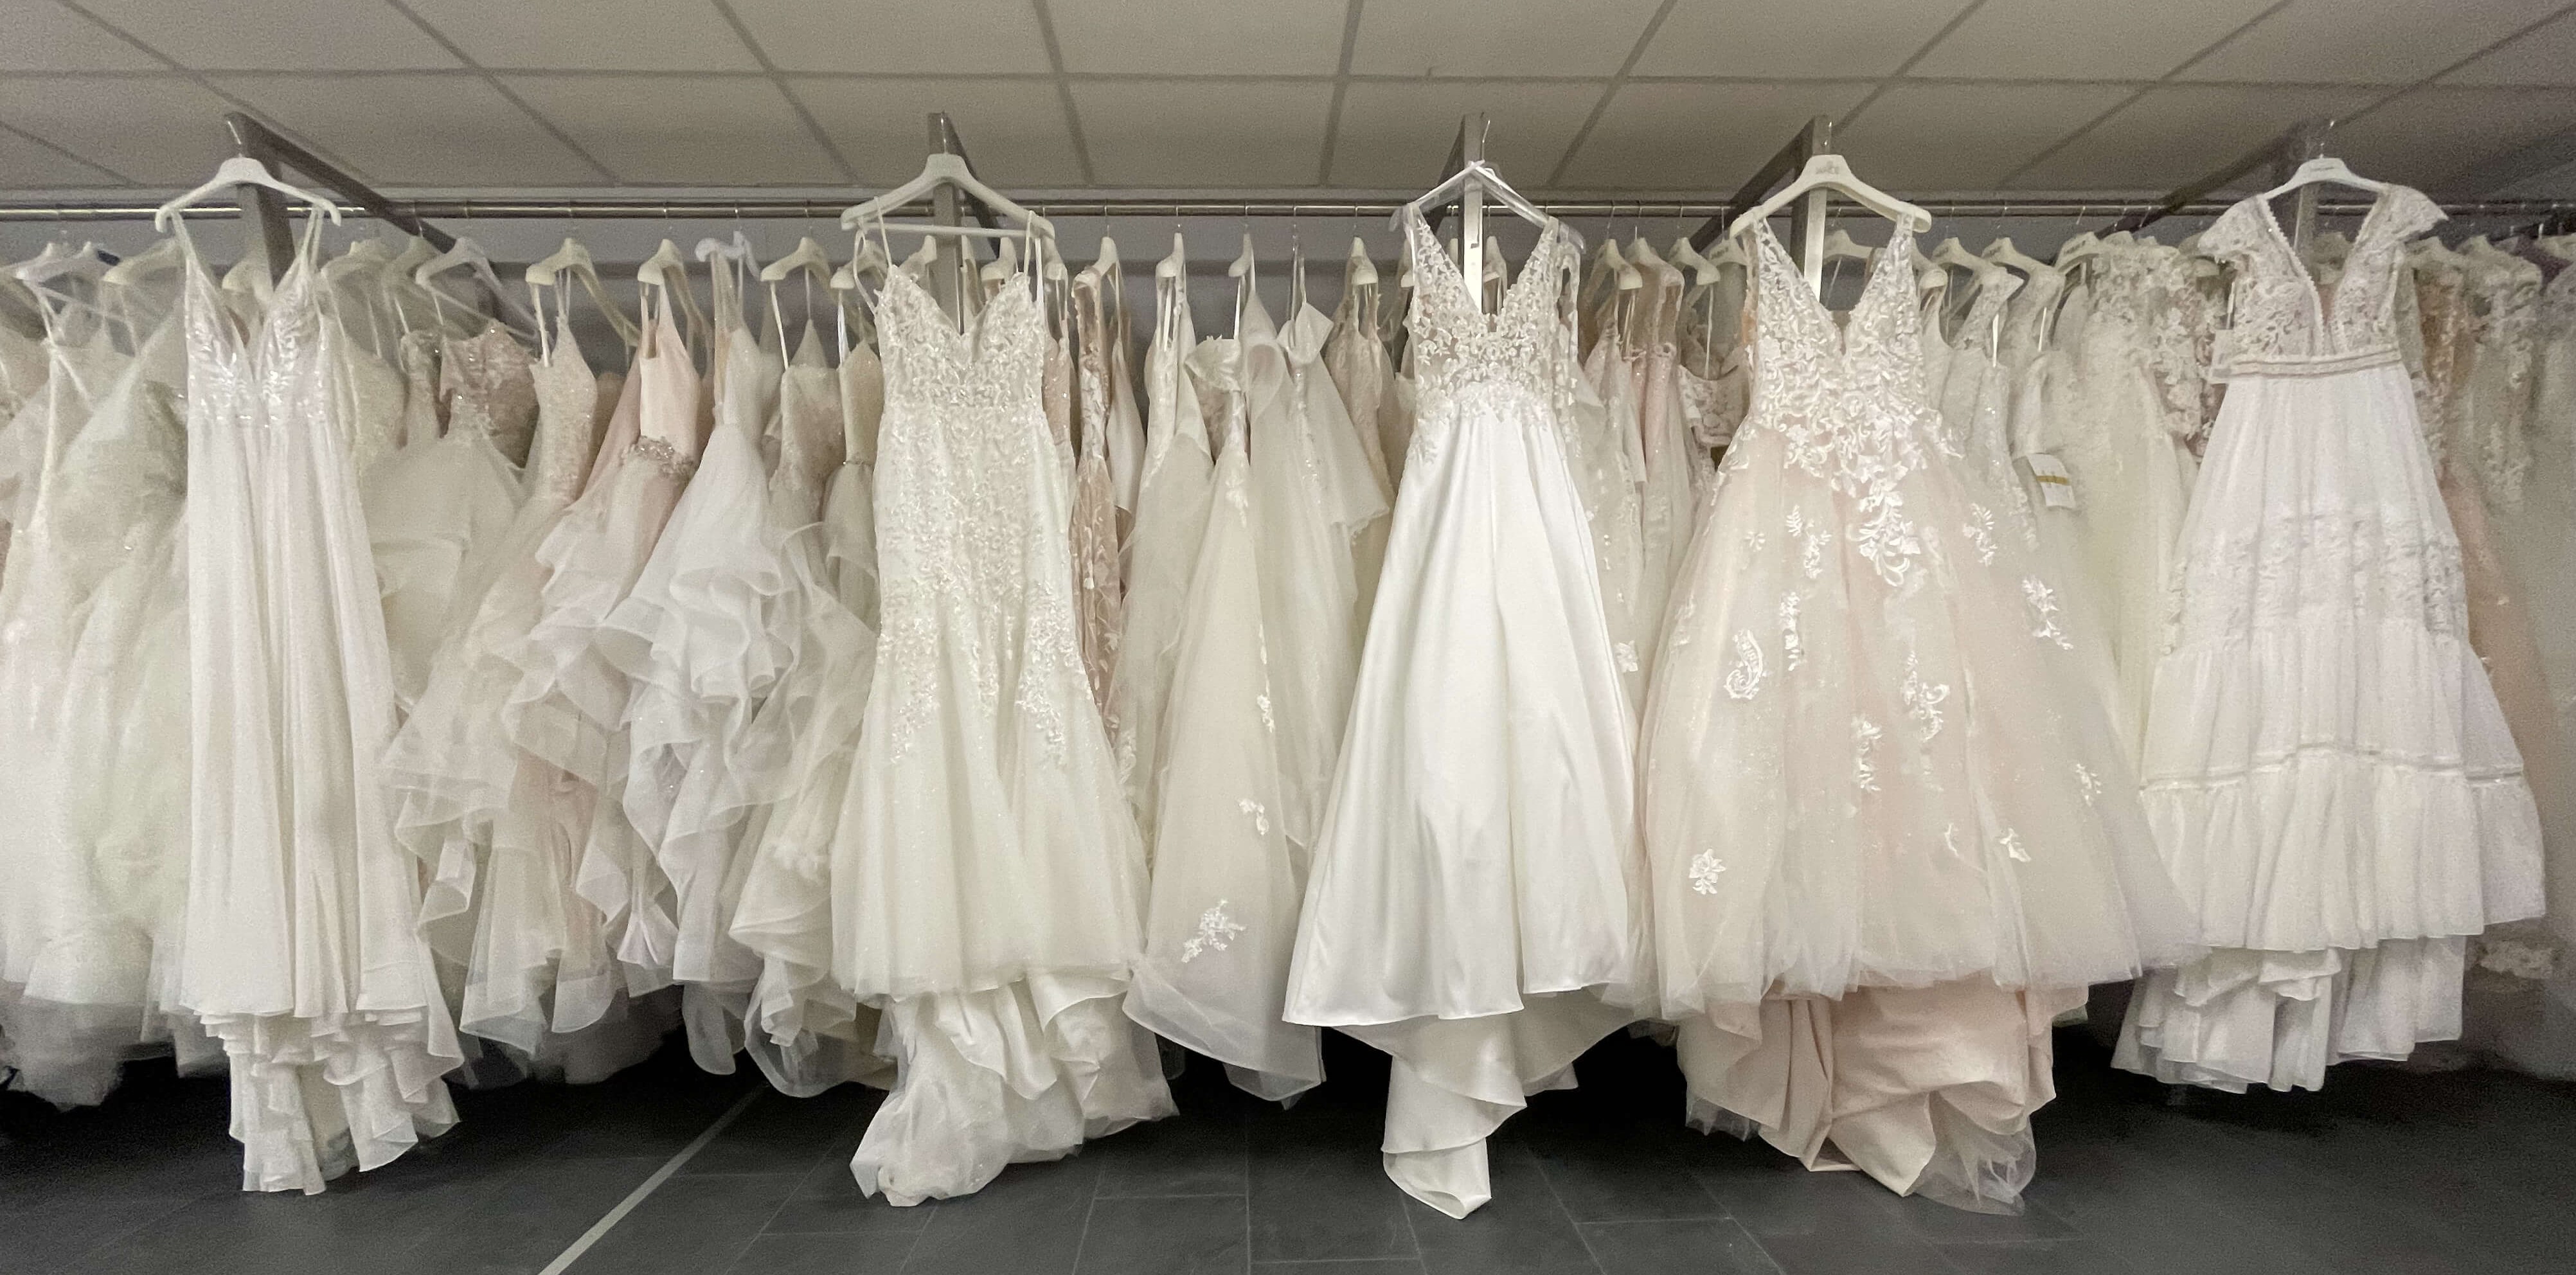 Verschiedene Brautkleider aus dem Sortiment von Braut- und Festmode Lauretta Schmitz aus Roetgen in der Nähe von Aachen